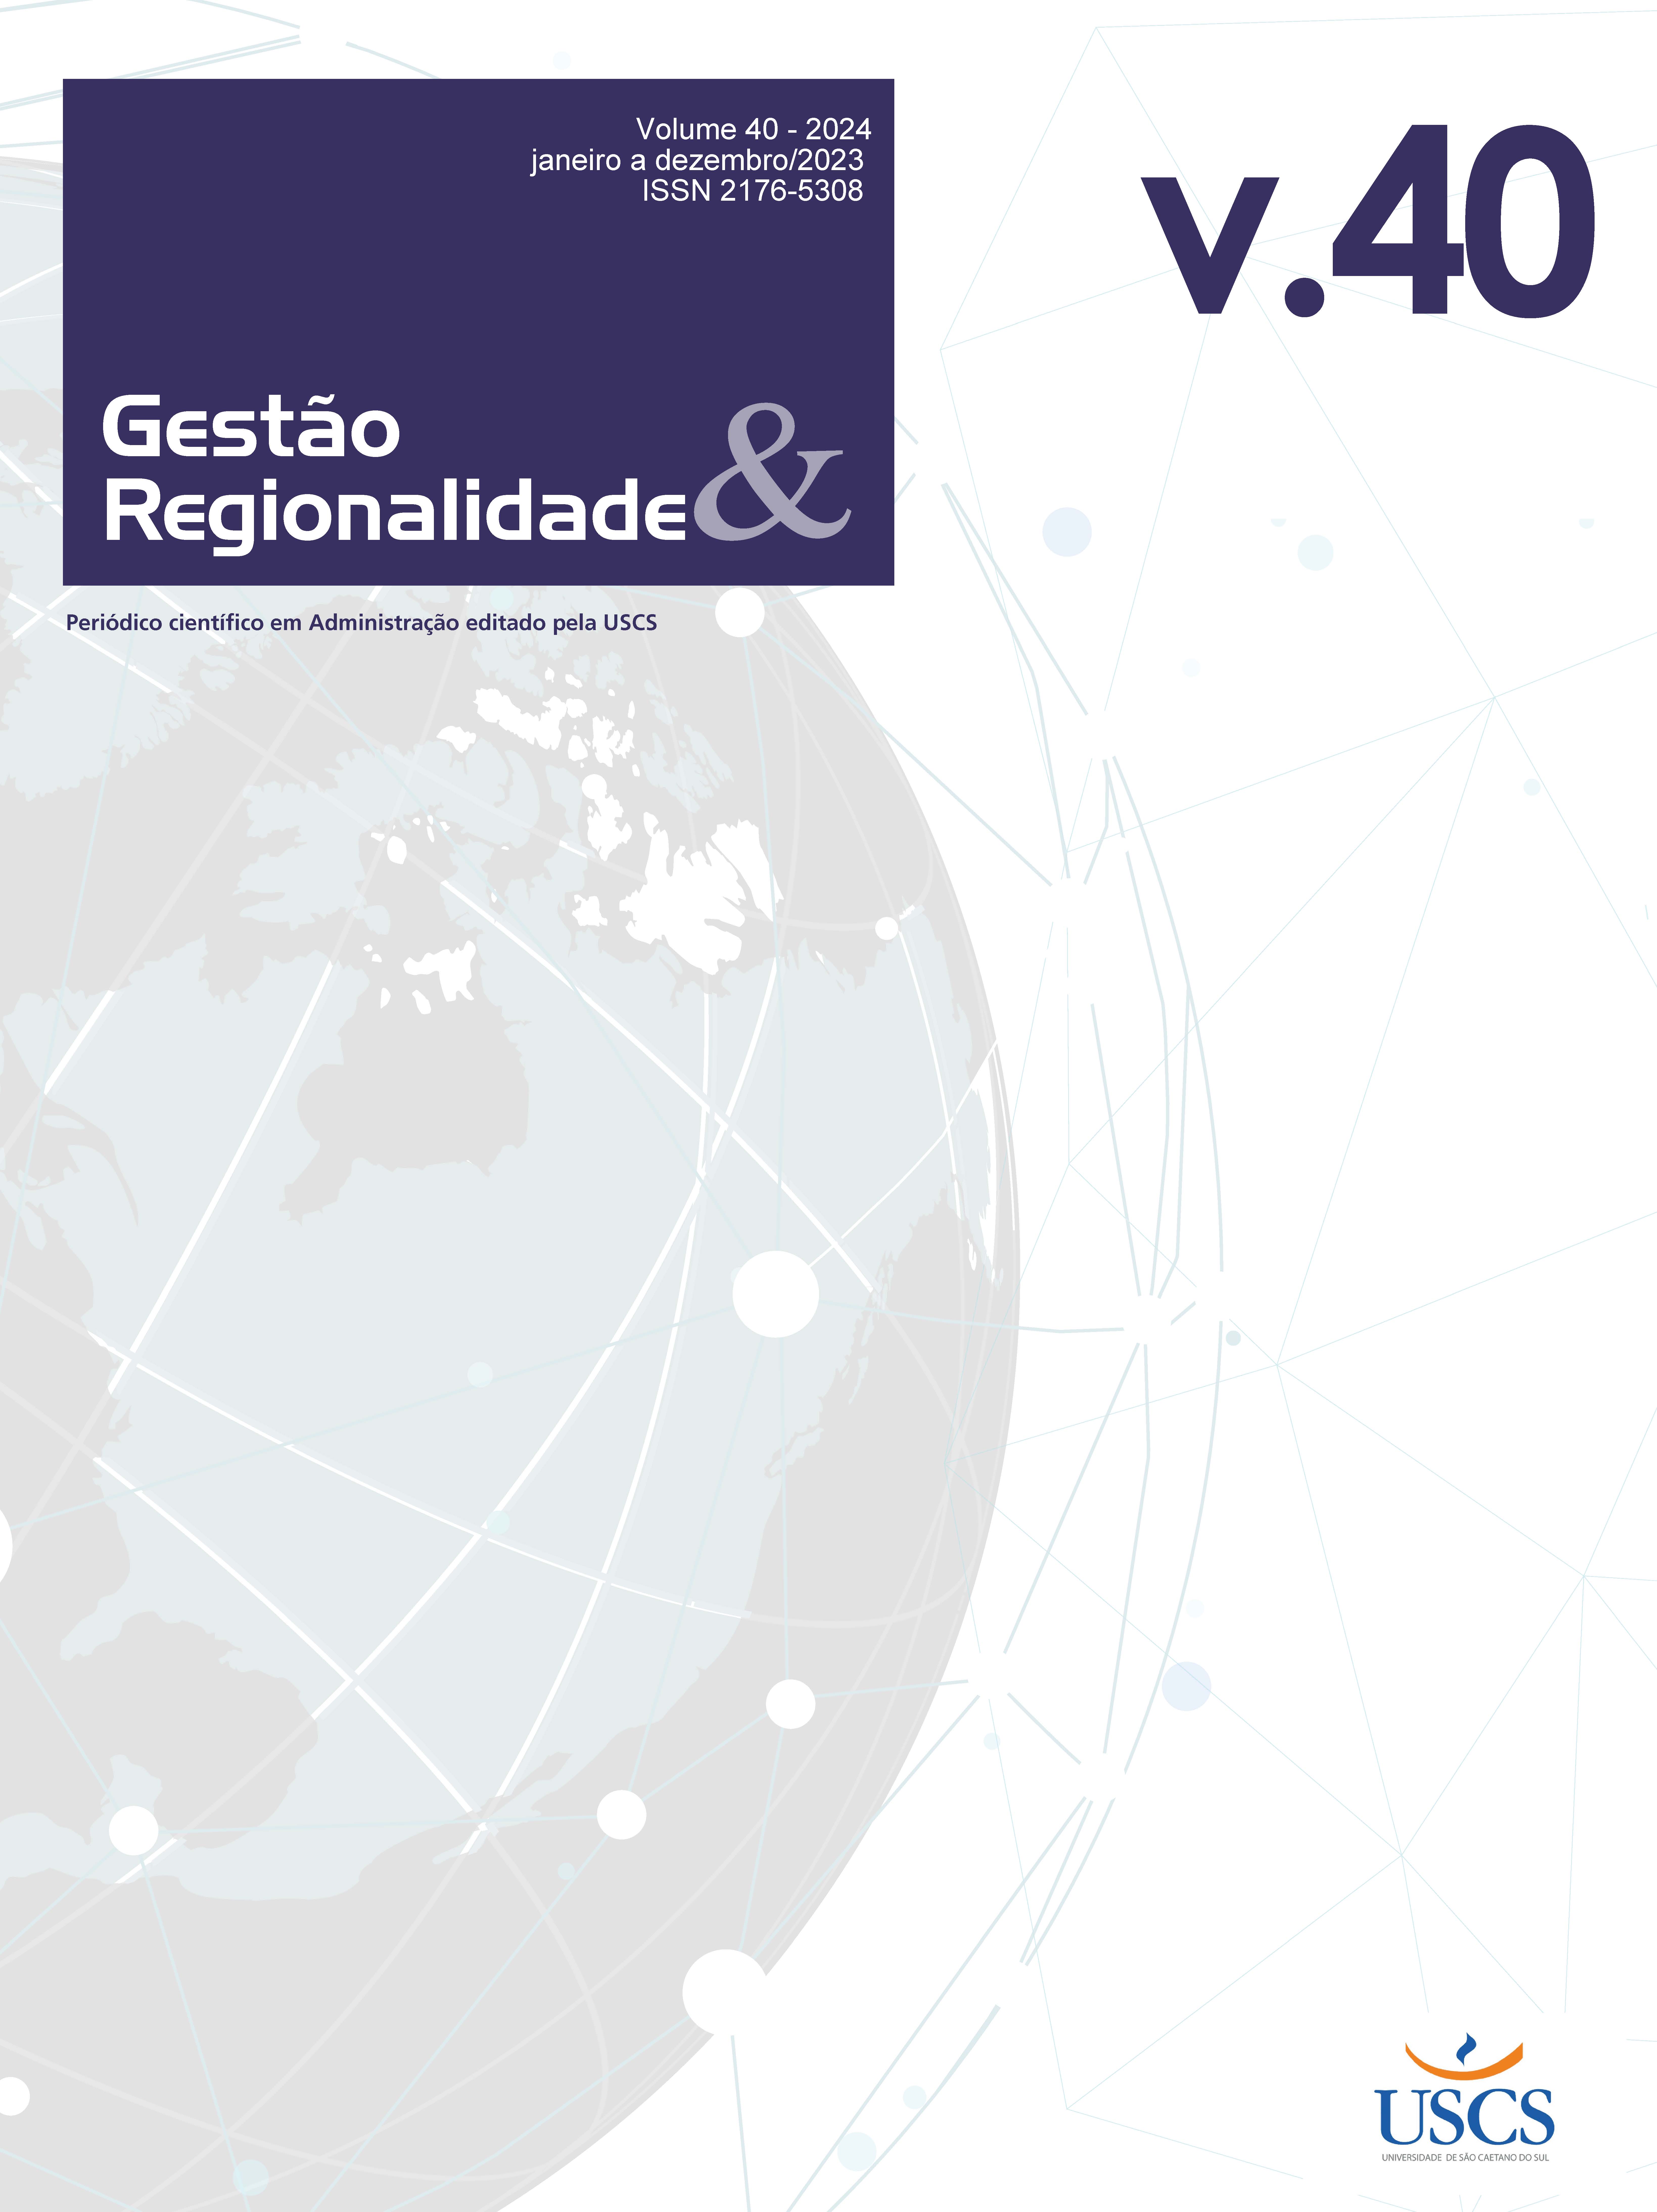 					View Vol. 40 (2024): REVISTA  GESTÃO & REGIONALIDADE
				